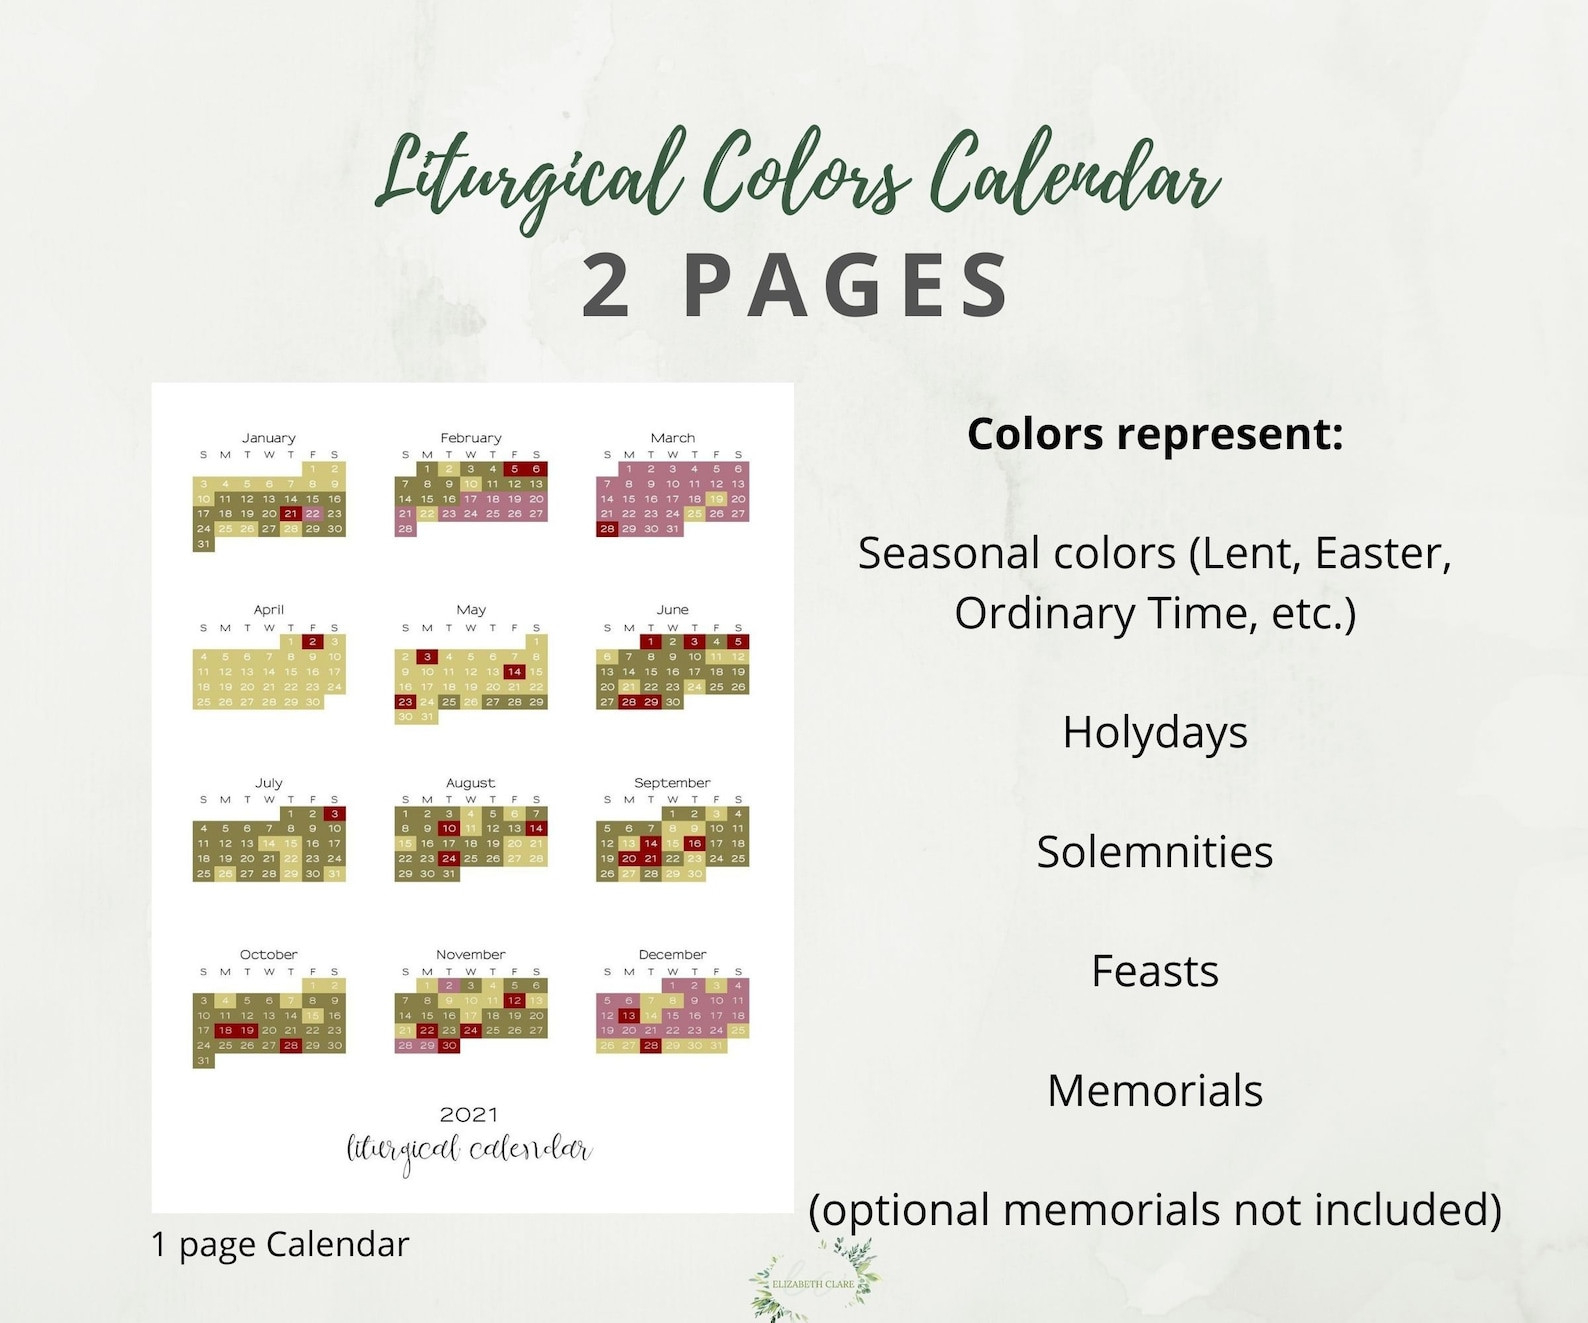 2021 Catholic Liturgical Calendar: Liturgical Colors Guide-Catholic Church Calendar For 2021